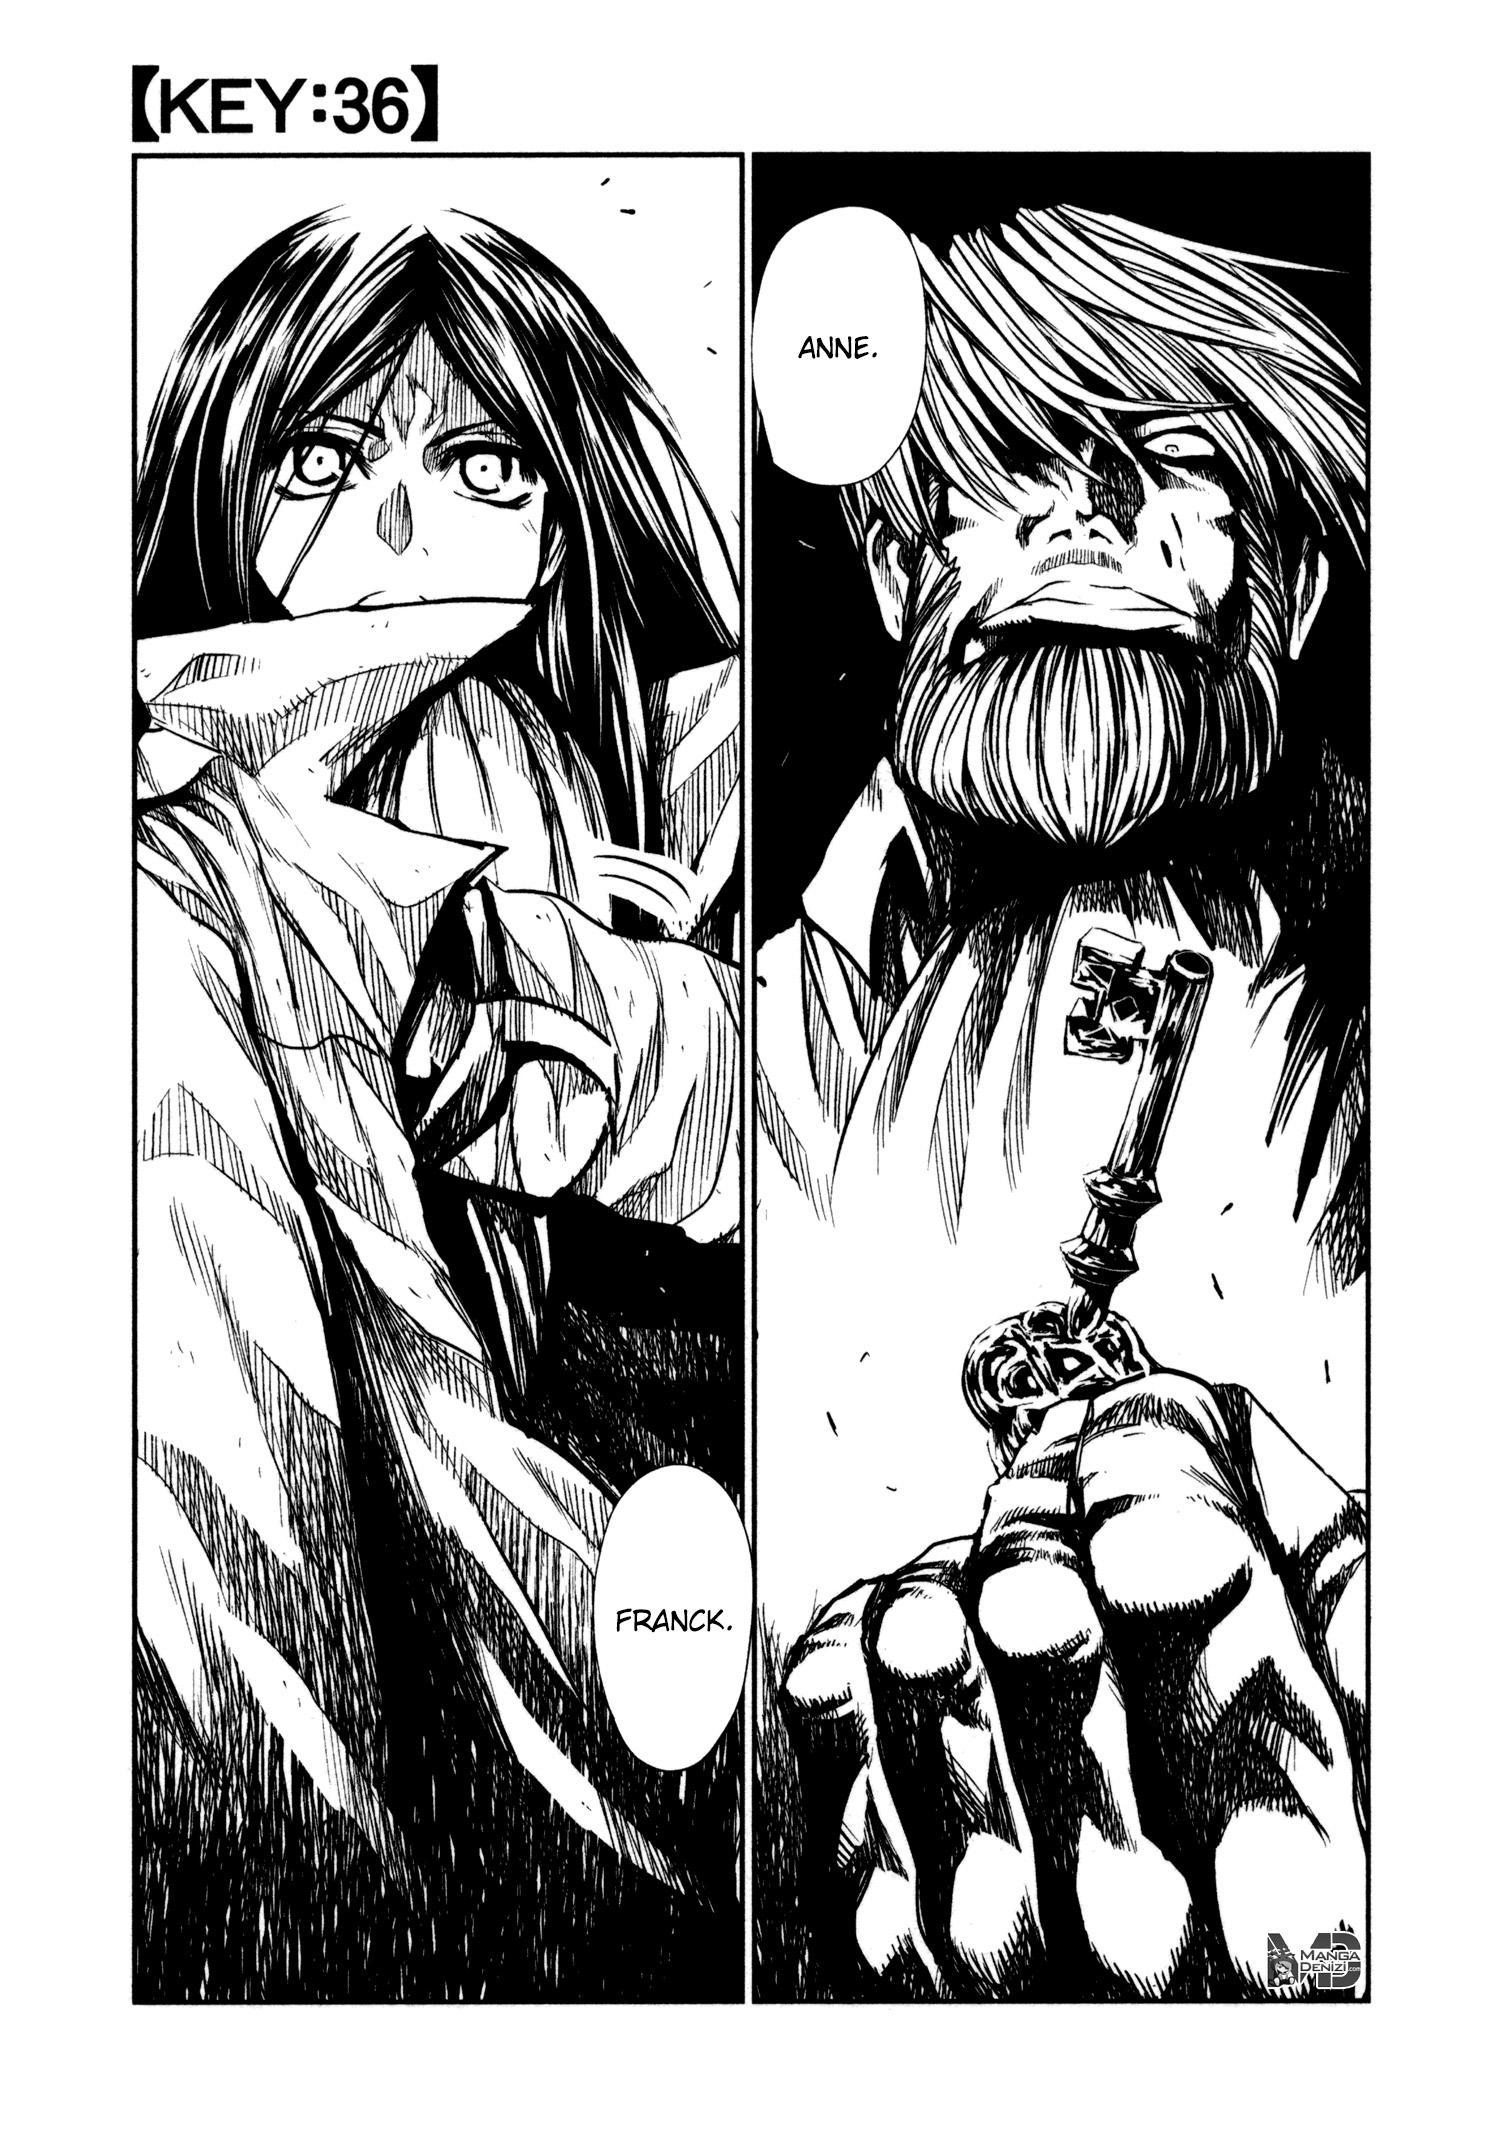 Keyman: The Hand of Judgement mangasının 36 bölümünün 2. sayfasını okuyorsunuz.